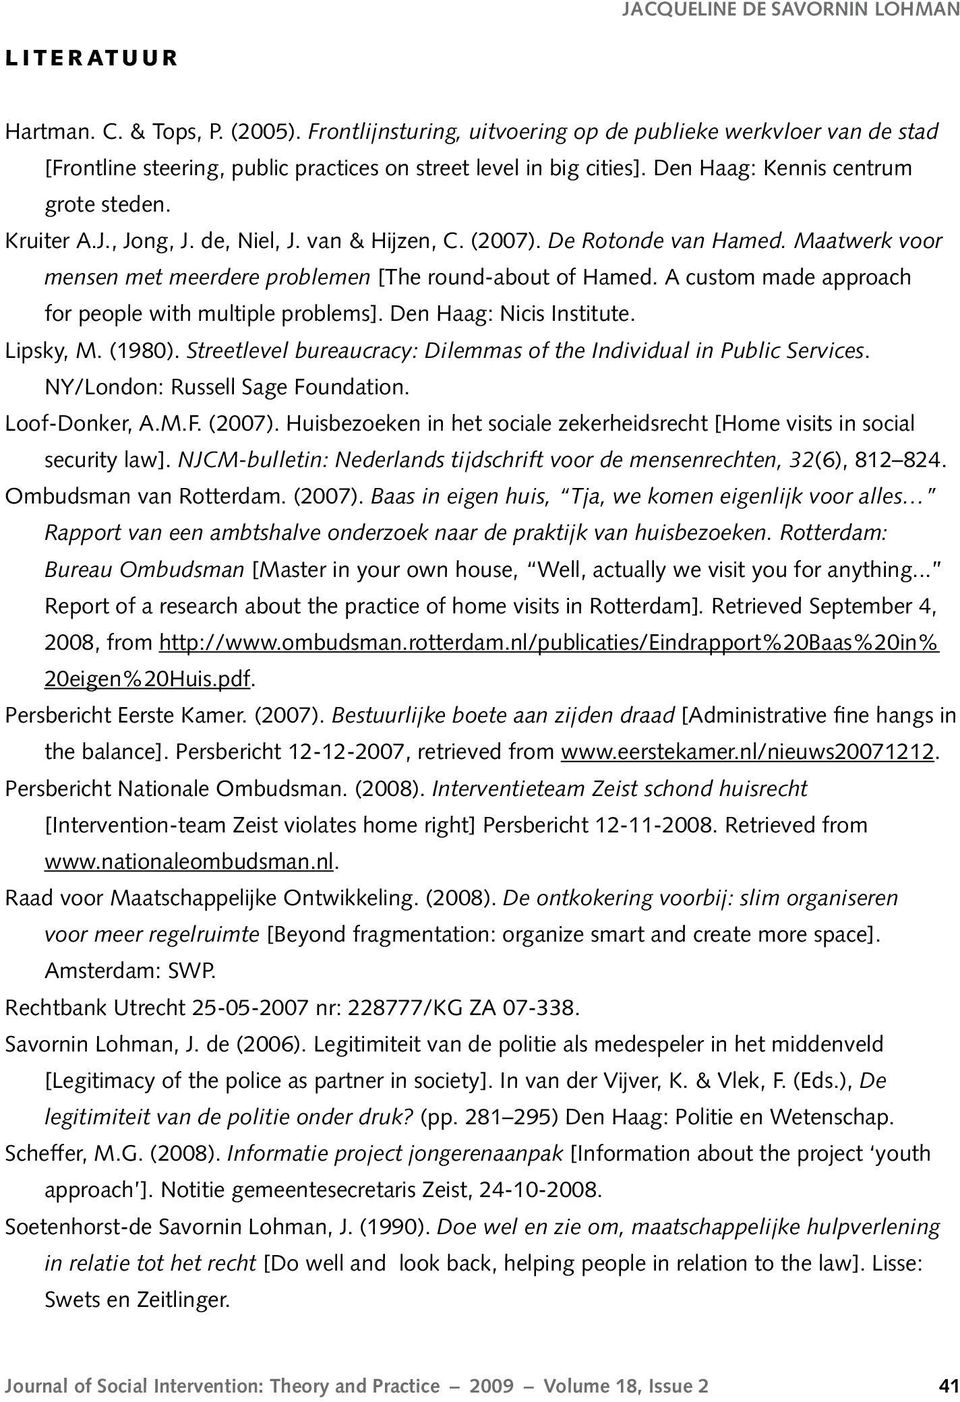 de, Niel, J. van & Hijzen, C. (2007). De Rotonde van Hamed. Maatwerk voor mensen met meerdere problemen [The round-about of Hamed. A custom made approach for people with multiple problems].